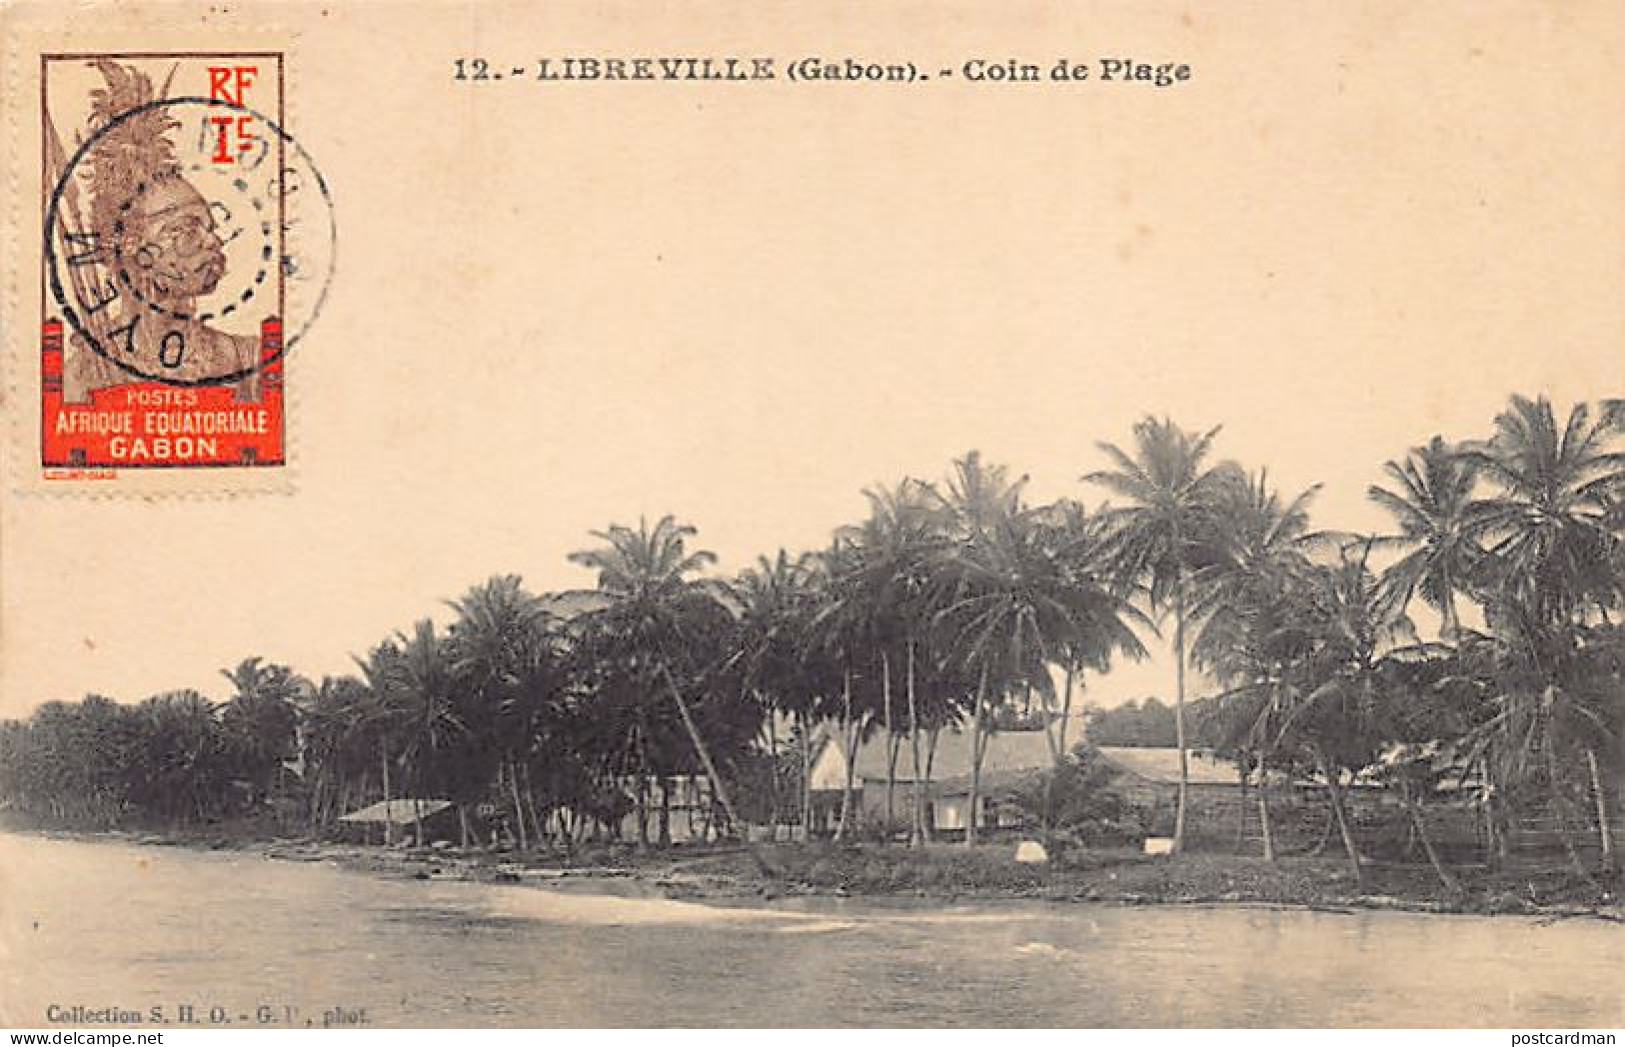 Gabon - LIBREVILLE - Coin De Plage - Ed. S.H.O. - G.P. 12 - Gabun